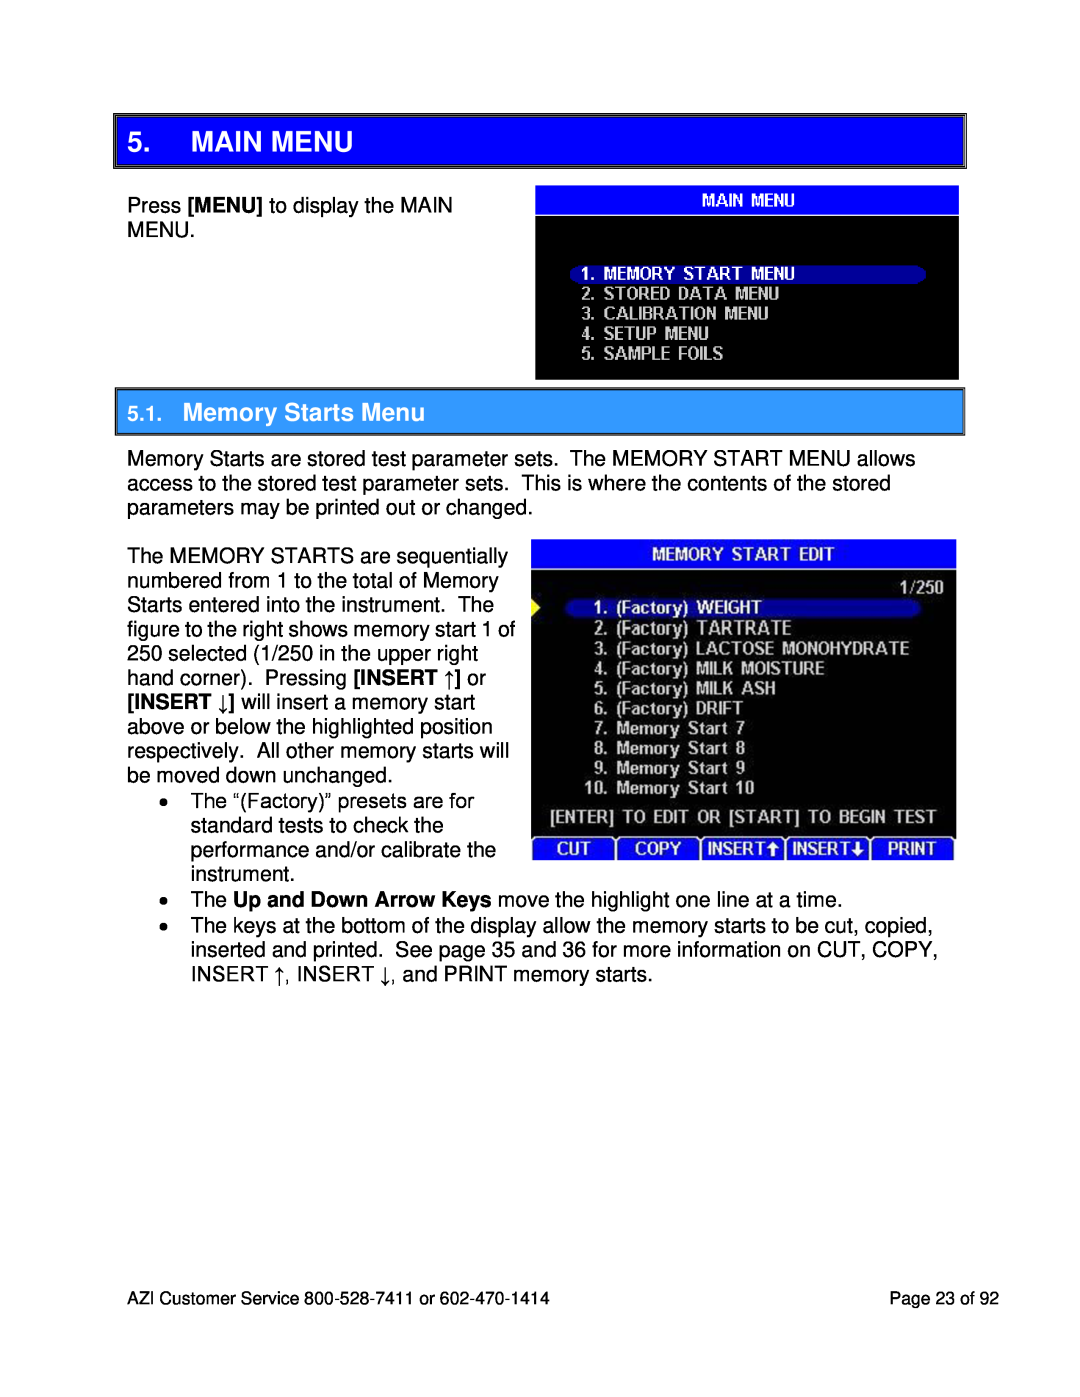 Arizona MAX-5000XL user manual Main Menu, Memory Starts Menu 